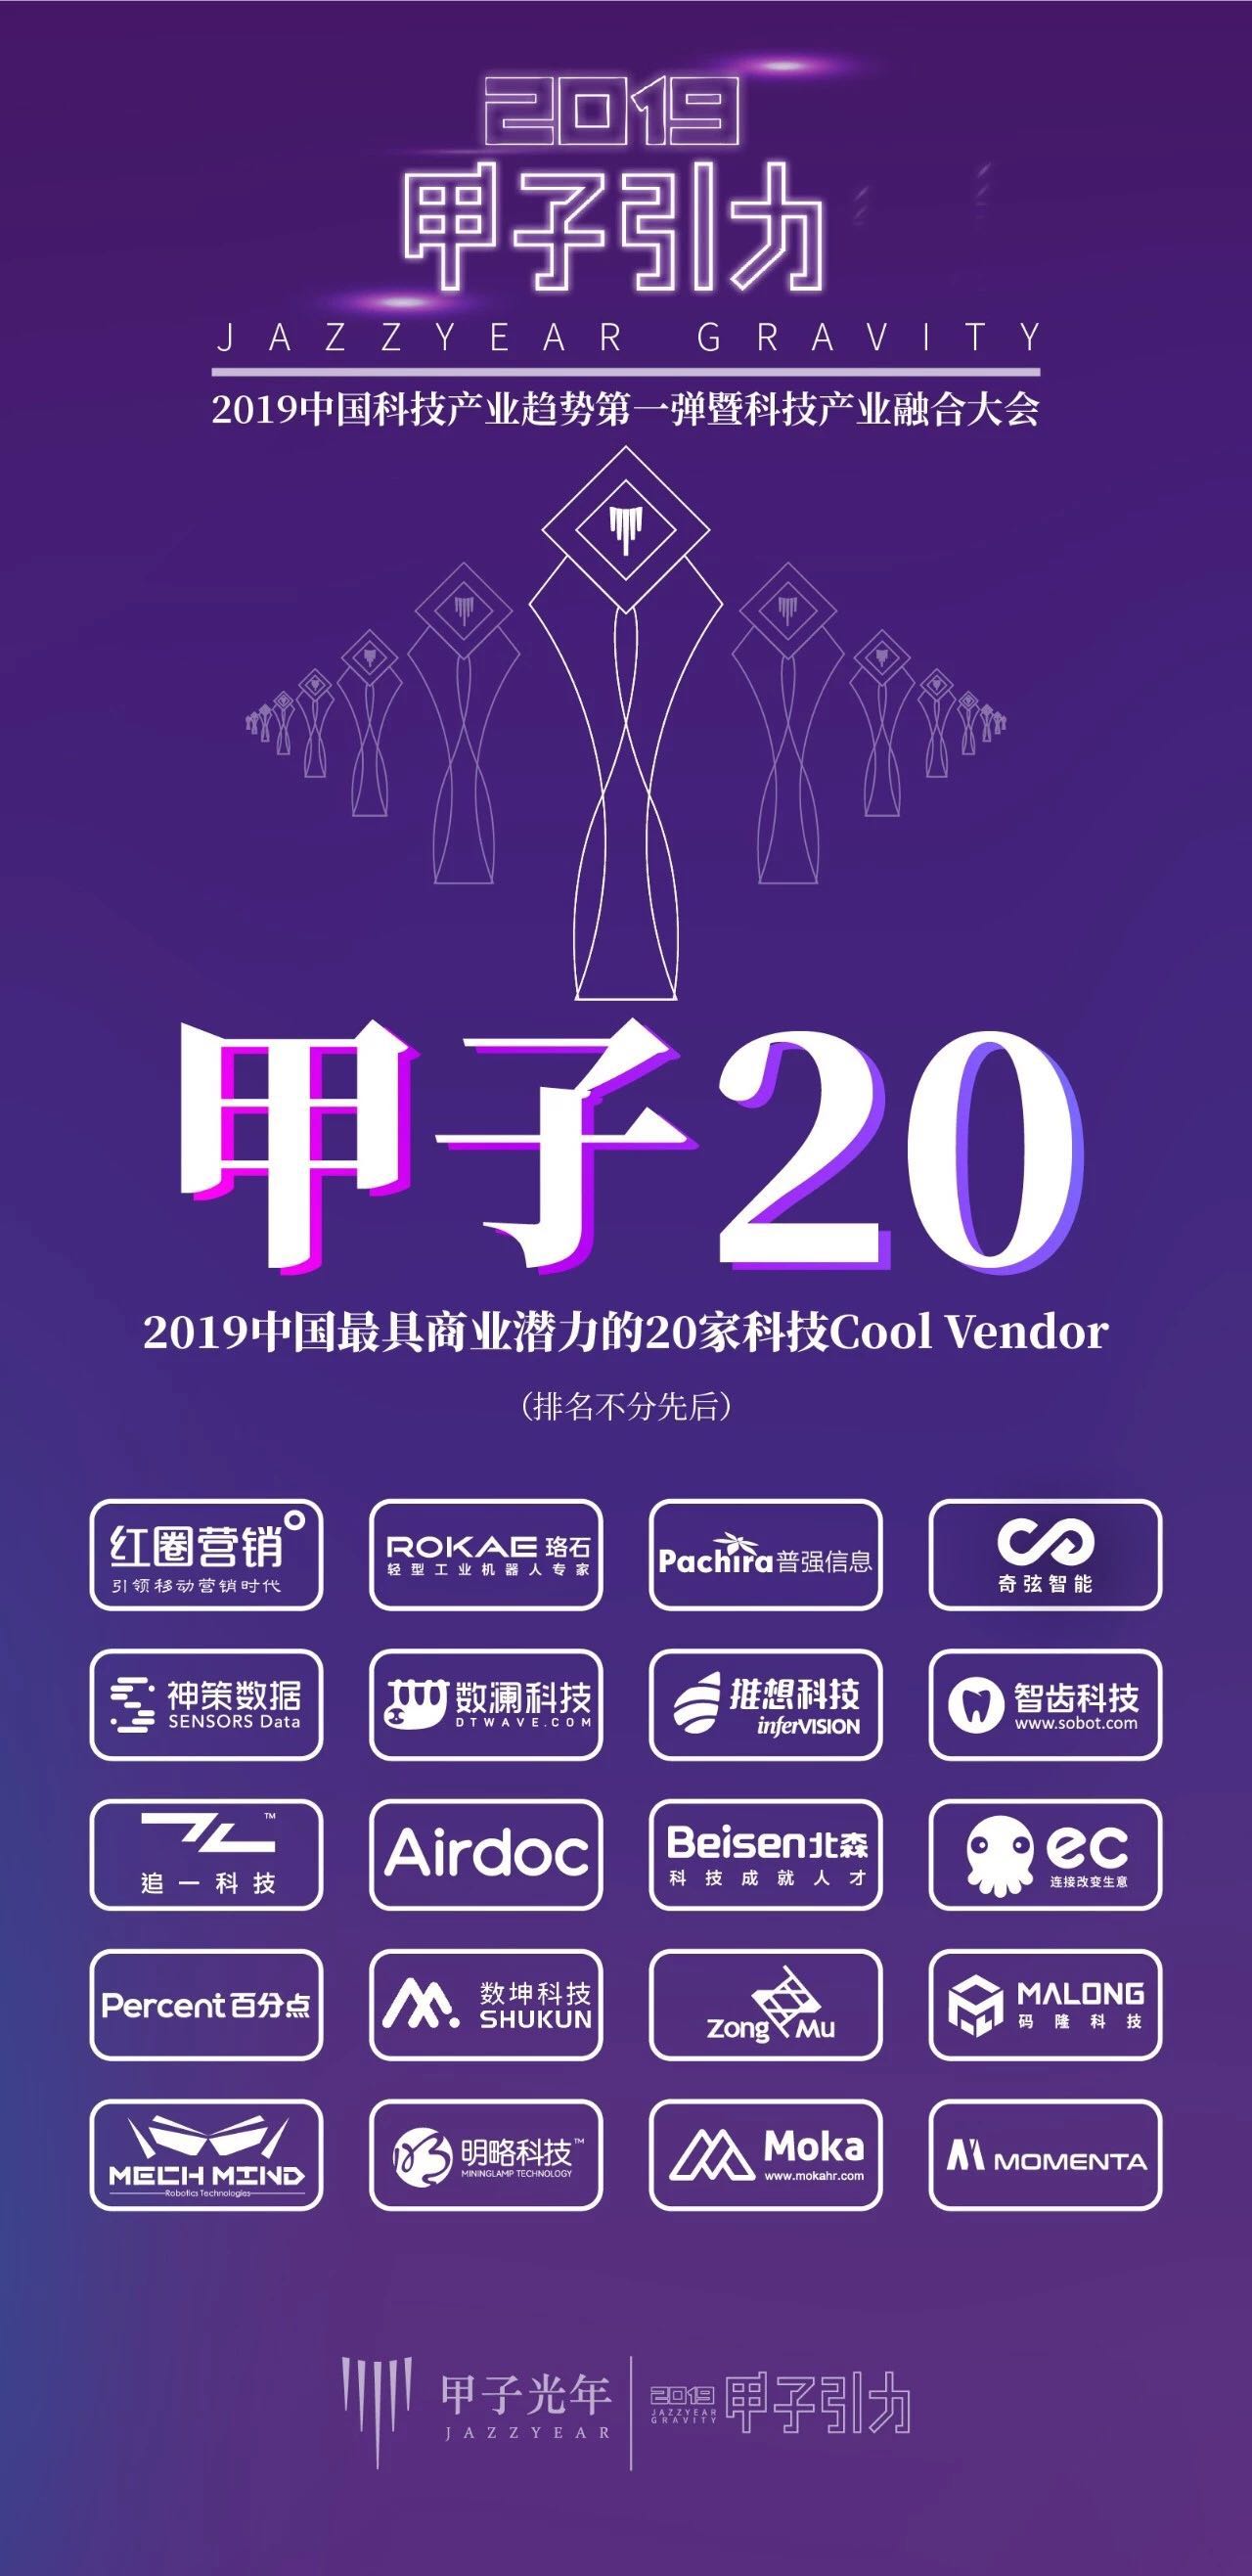 梅卡曼德荣获“甲子20”——2019中国最具商业潜力的20家Cool Vendor